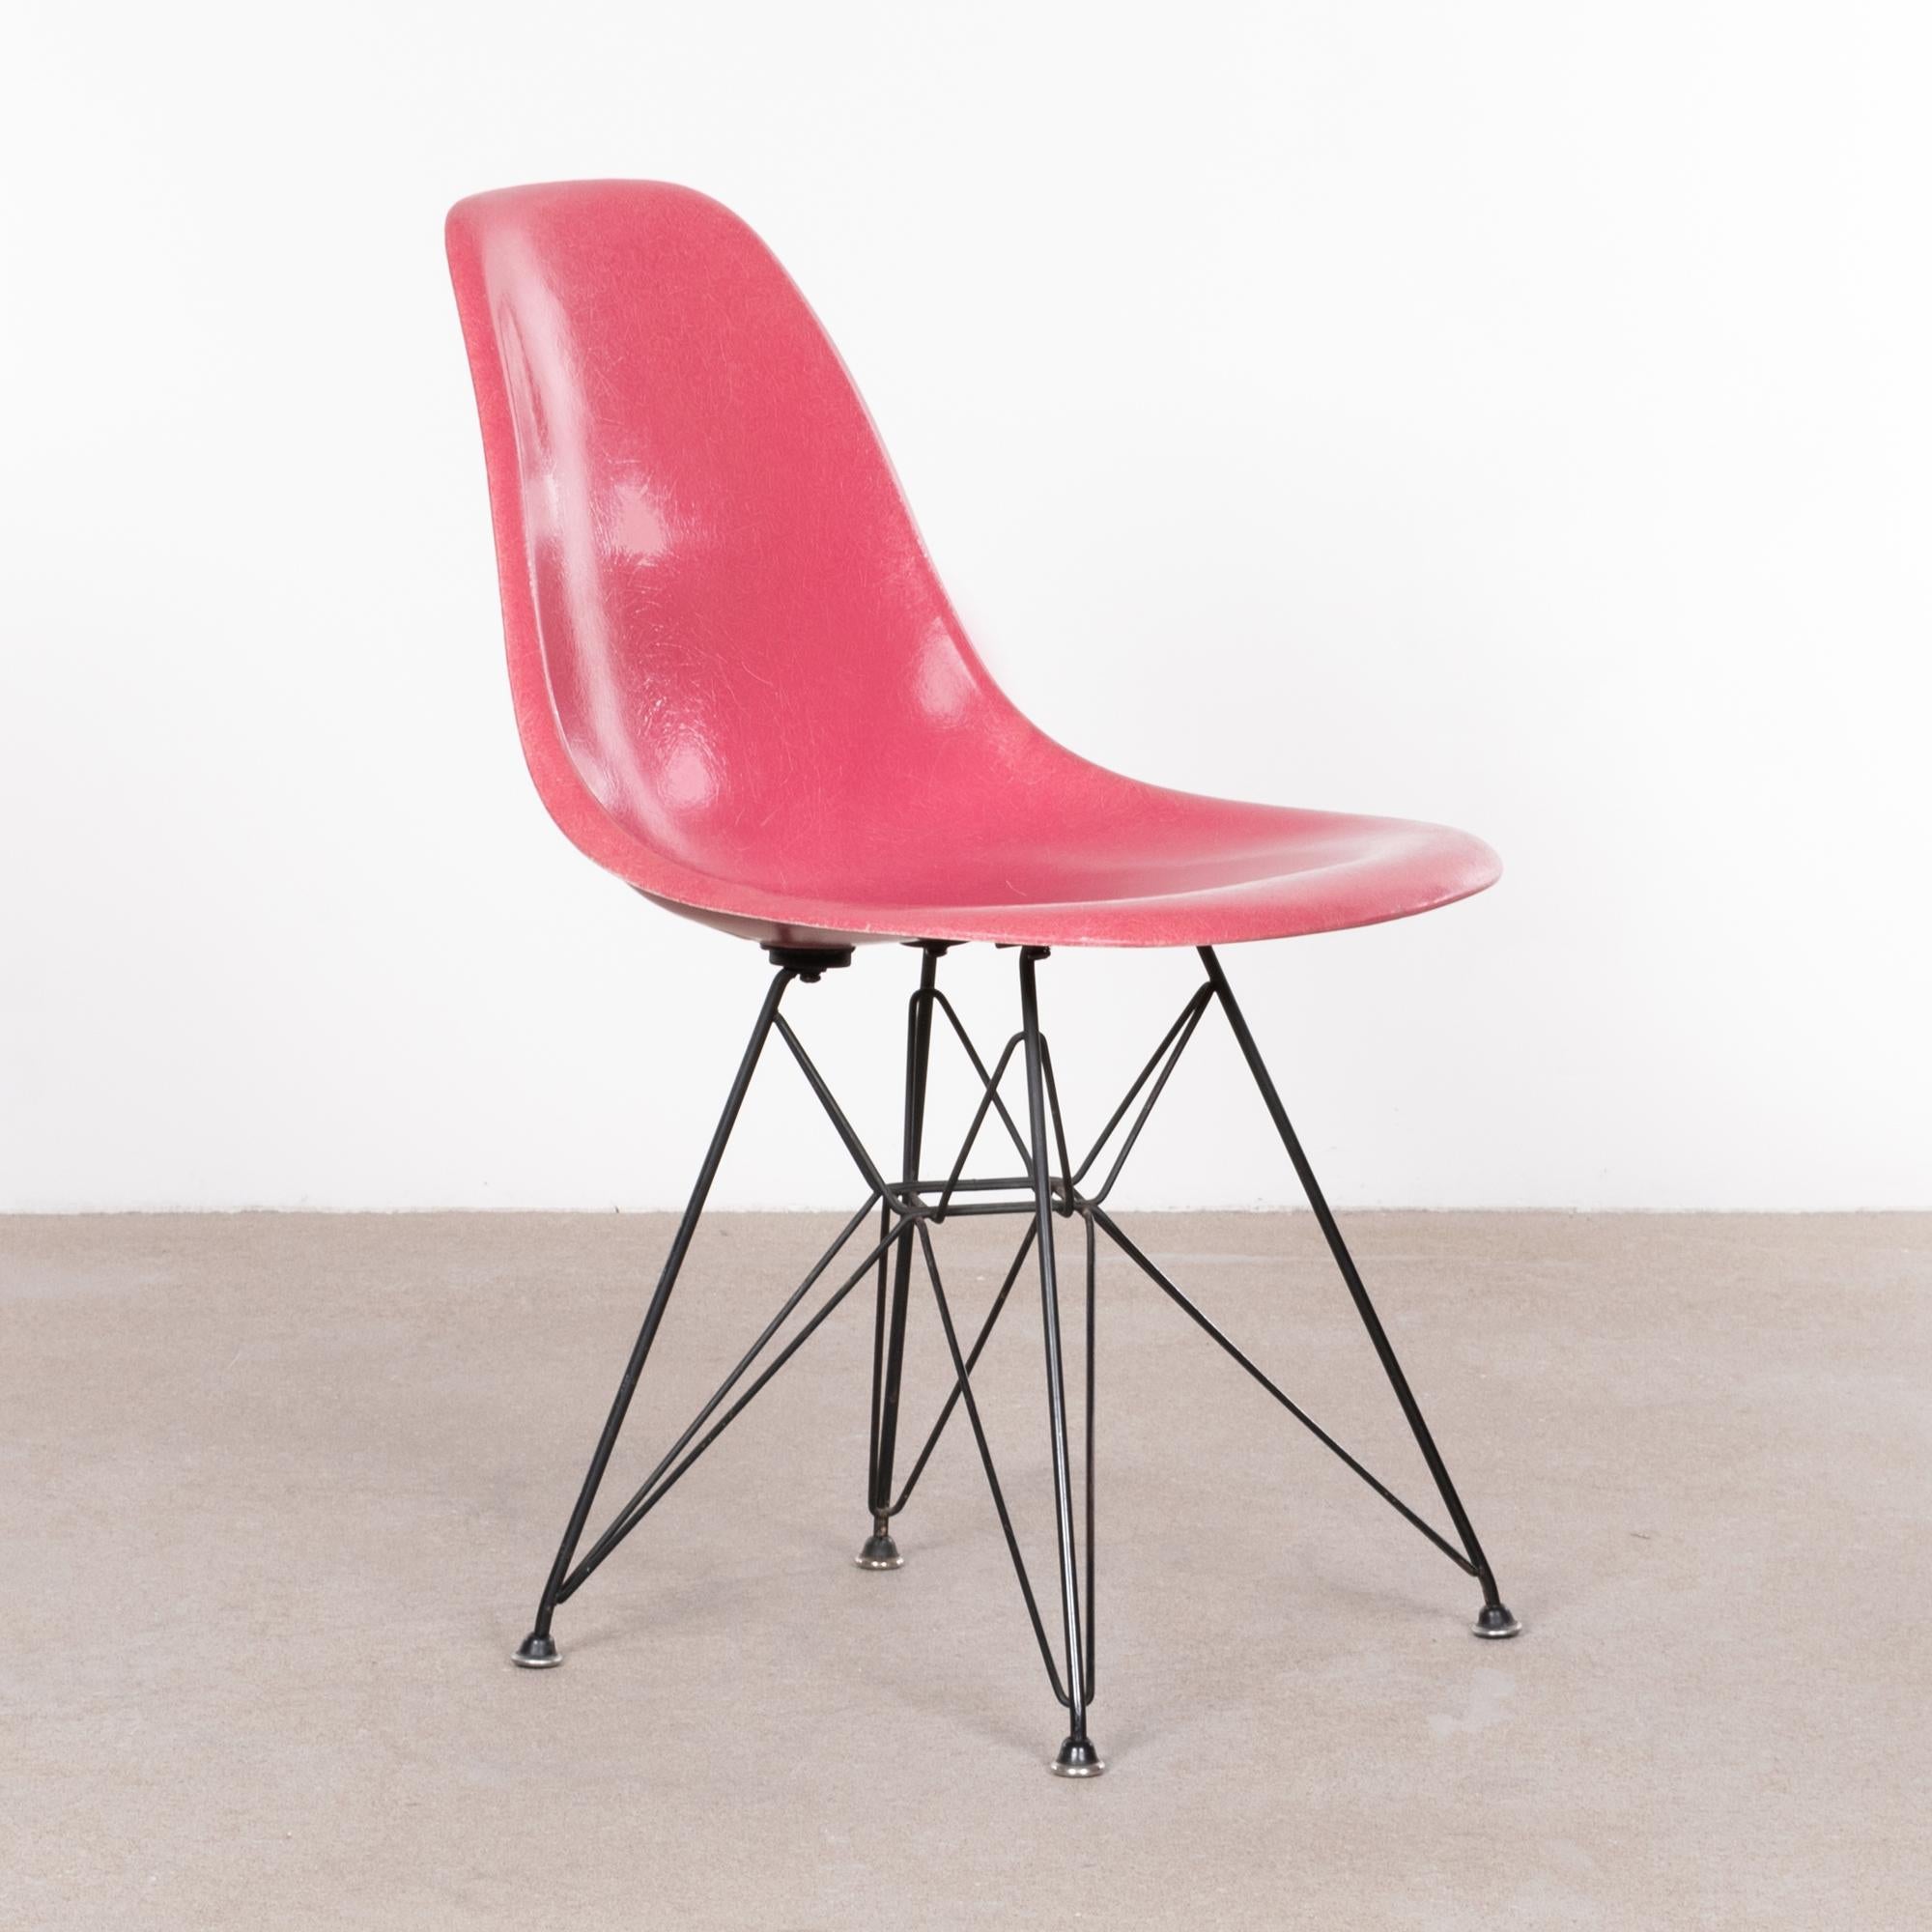 Schöner ikonischer DSR-Stuhl in seltener rosa Farbe. Die Fiberglasschale ist in einem sehr guten Vintage-Zustand mit nur geringen Gebrauchsspuren. Originaler schwarz emaillierter Stahlsockel ebenfalls in sehr gutem Zustand. Der Stuhl ist mit einem